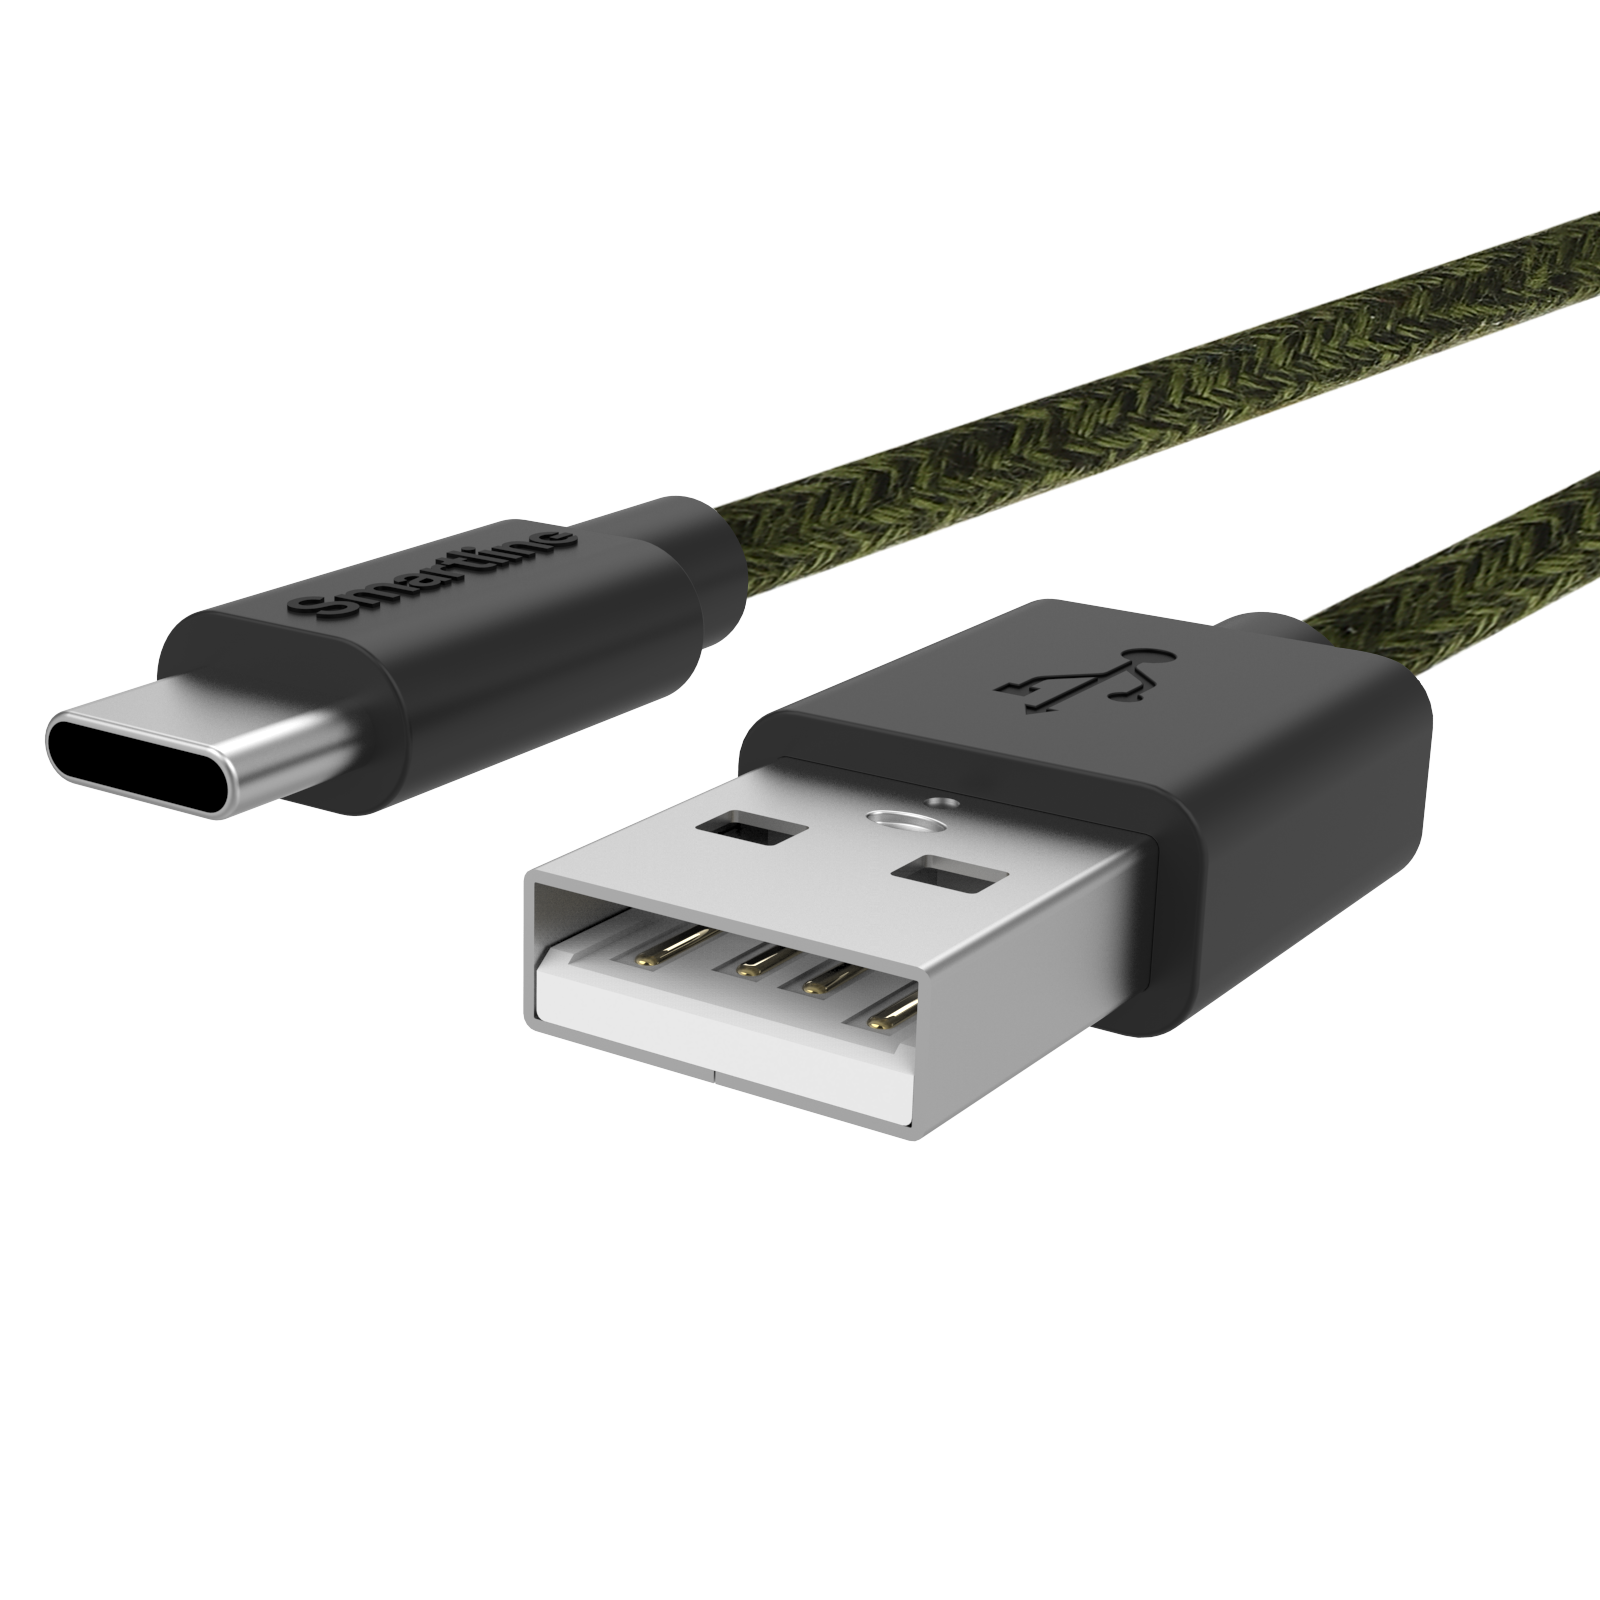 Fuzzy USB-kabel USB-C 2m Grön